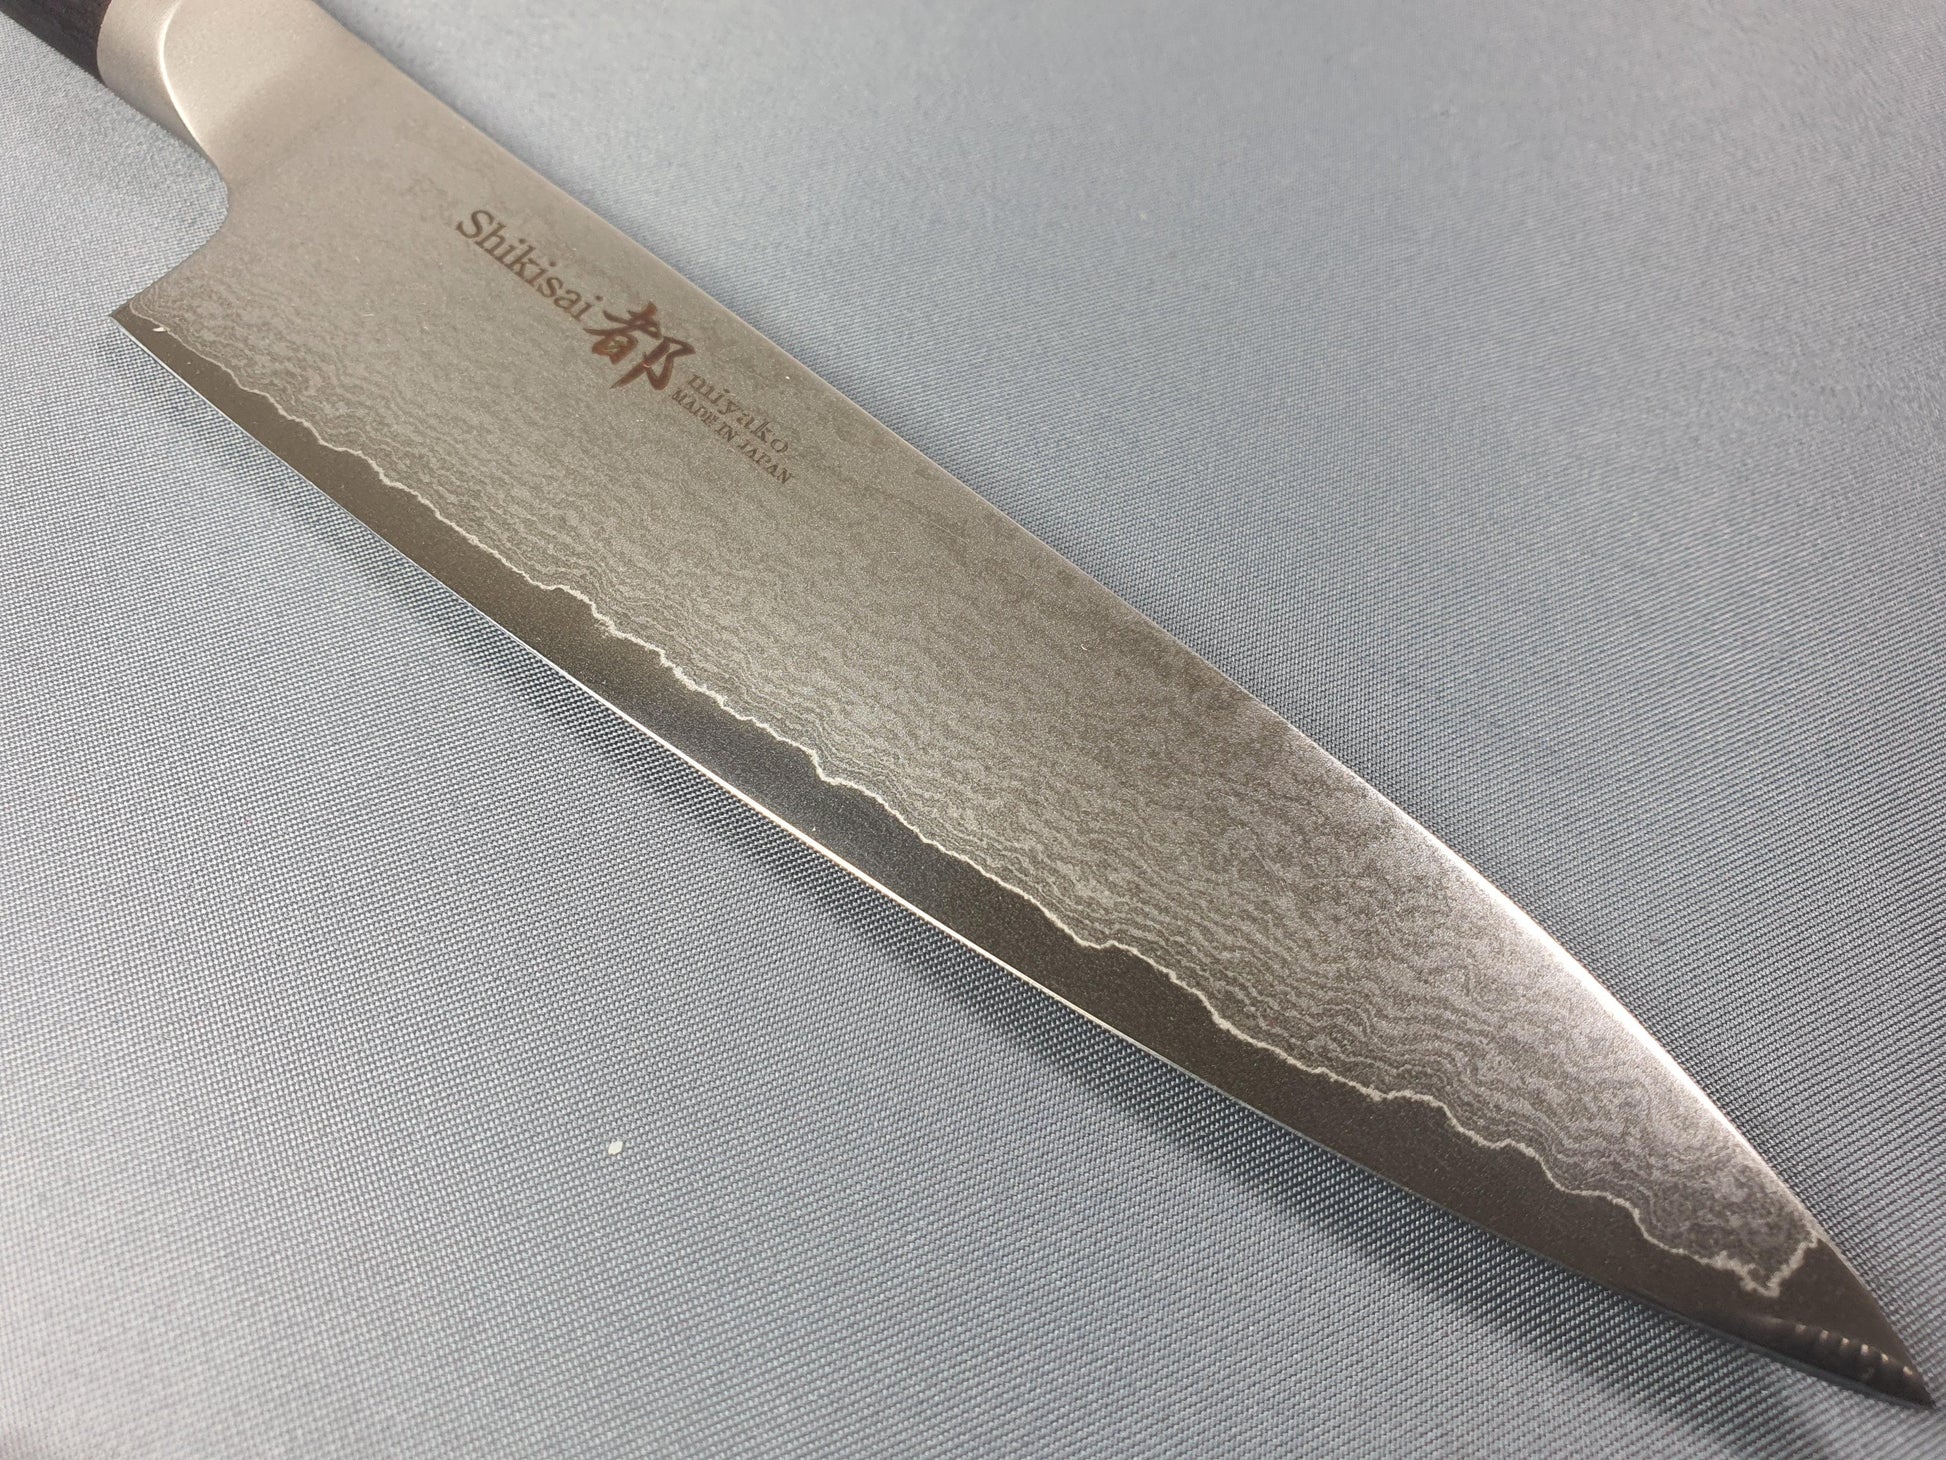 Shikisai MIYAKO Damascus 130mm Petty - The Sharp Chef